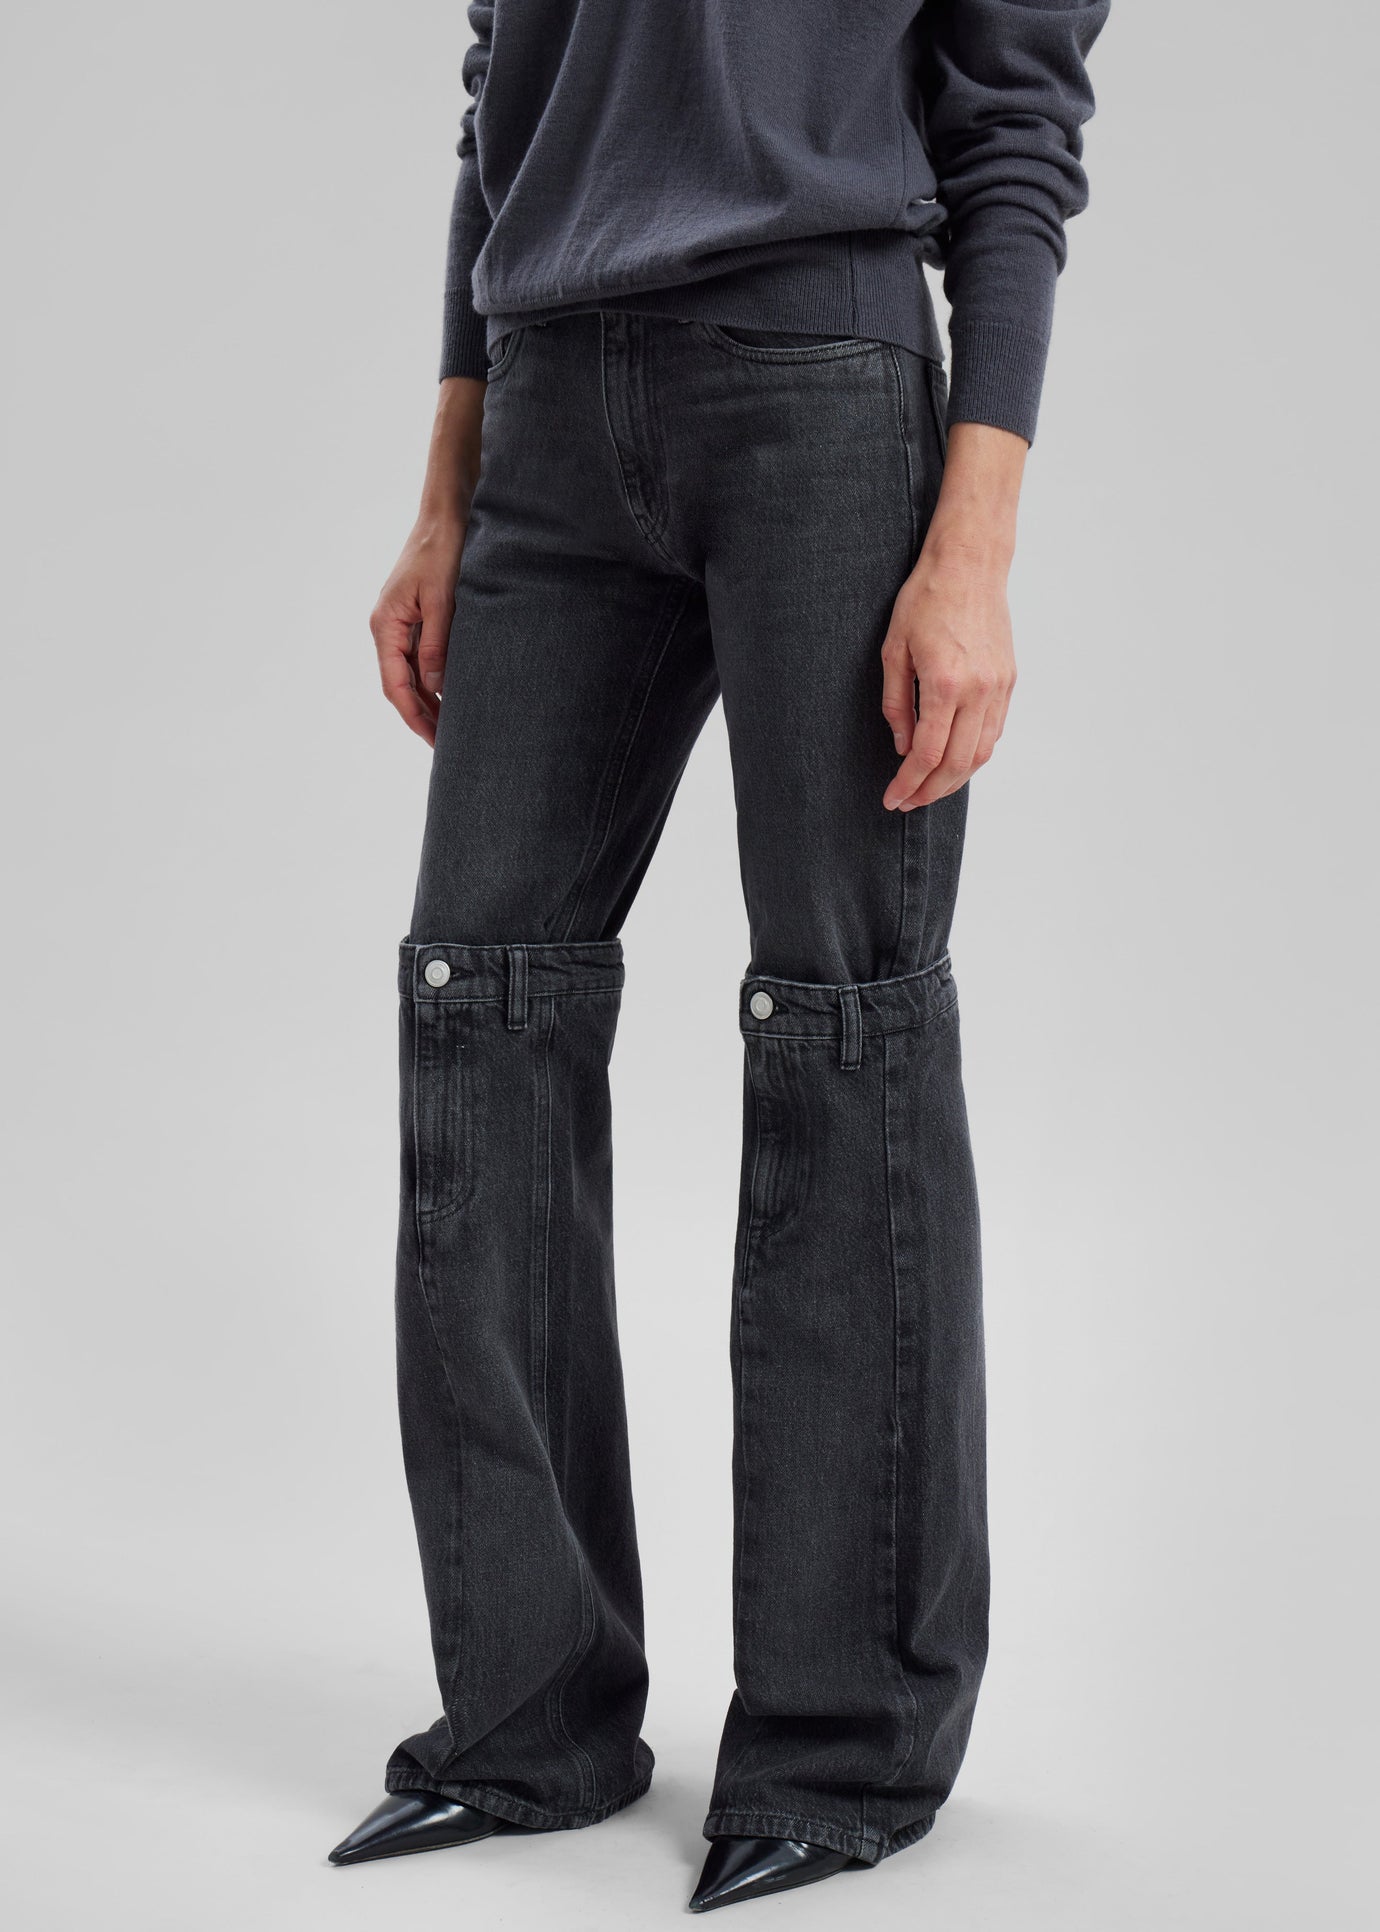 V VOCNI Ripped Hole Denim Shorts Sexy Short Jeans Hot Pants Casual Jeans  Frayed Tassel Hem Short Dark Blue Medium - ShopStyle